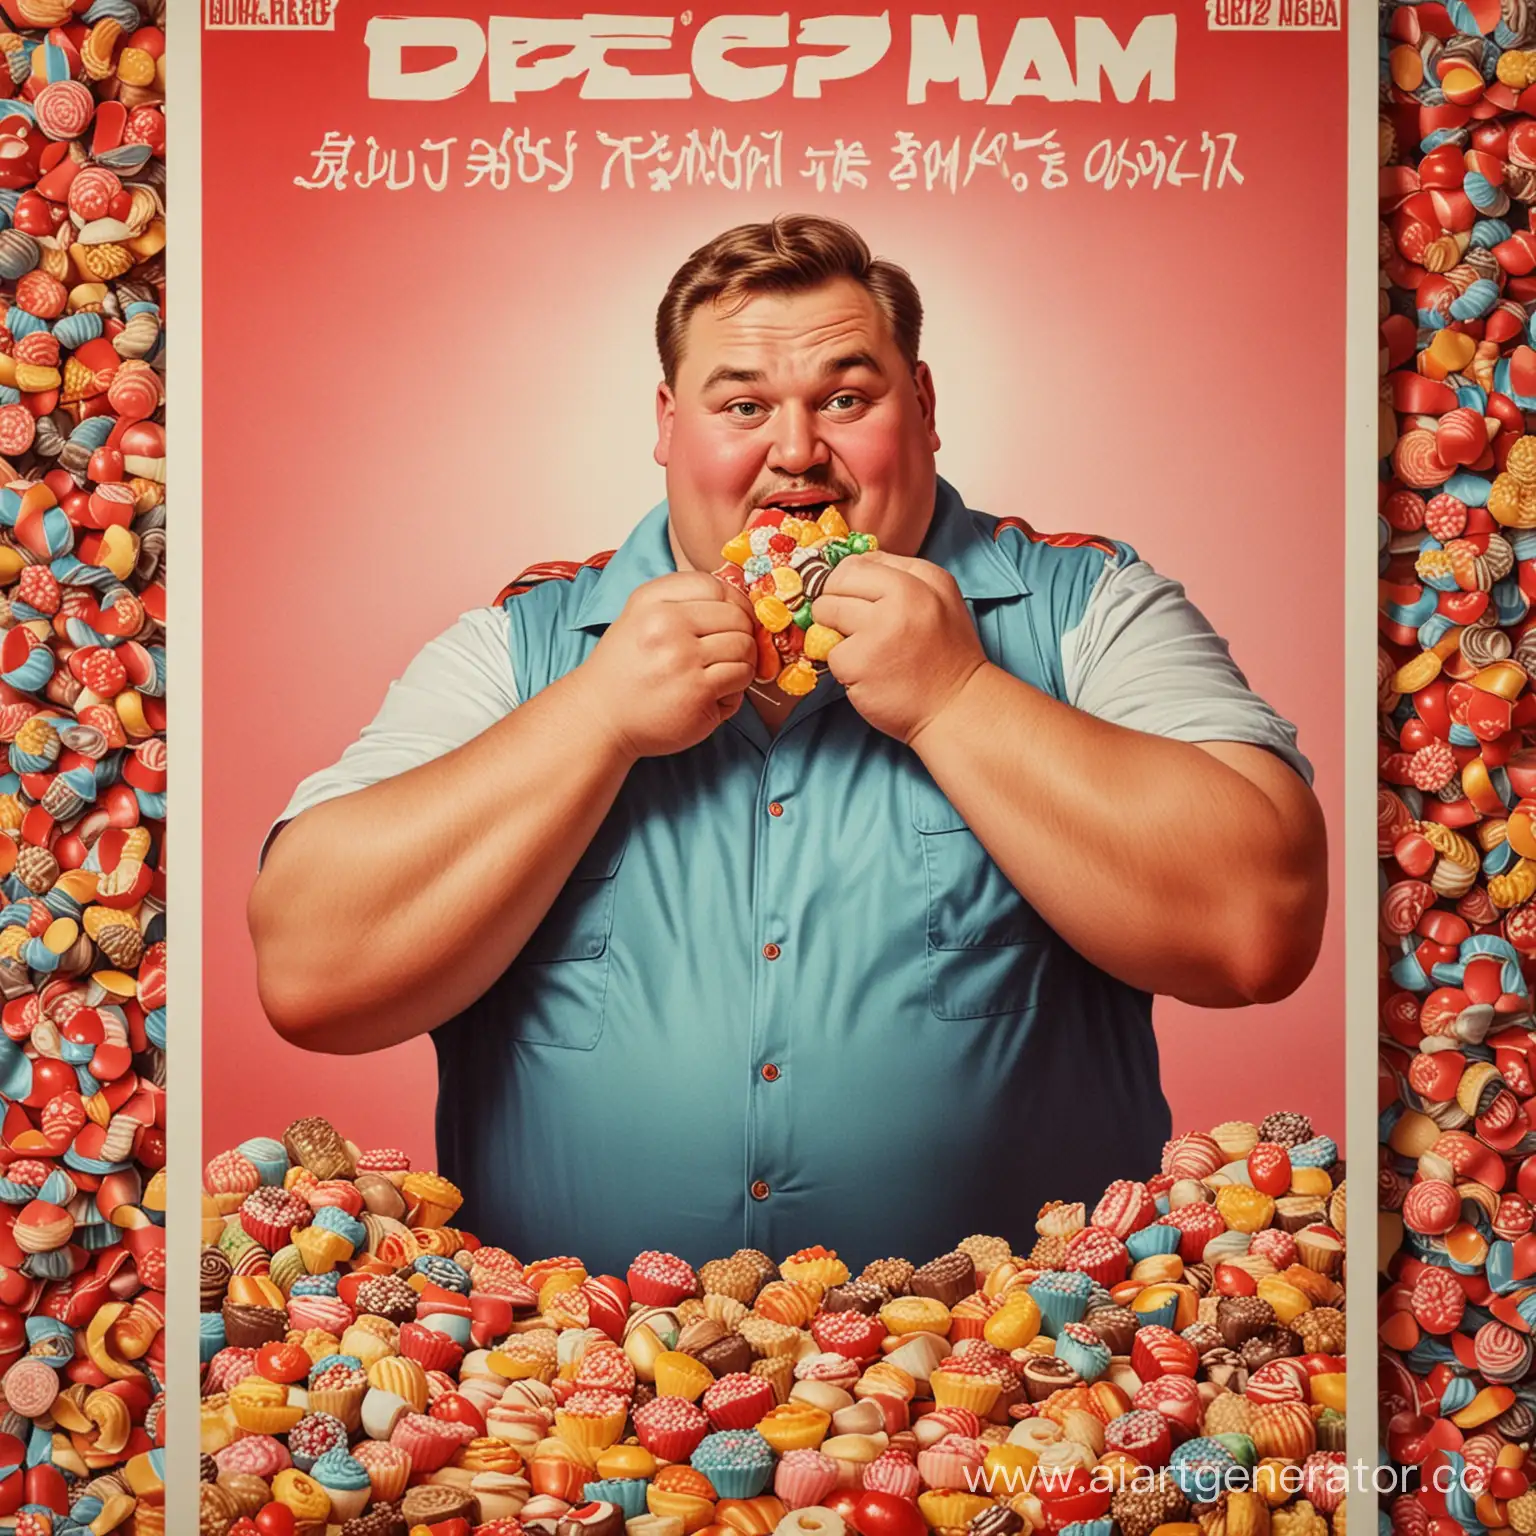 плакат в стиле ссср, где толстыф мужчина есть очень много сладкого